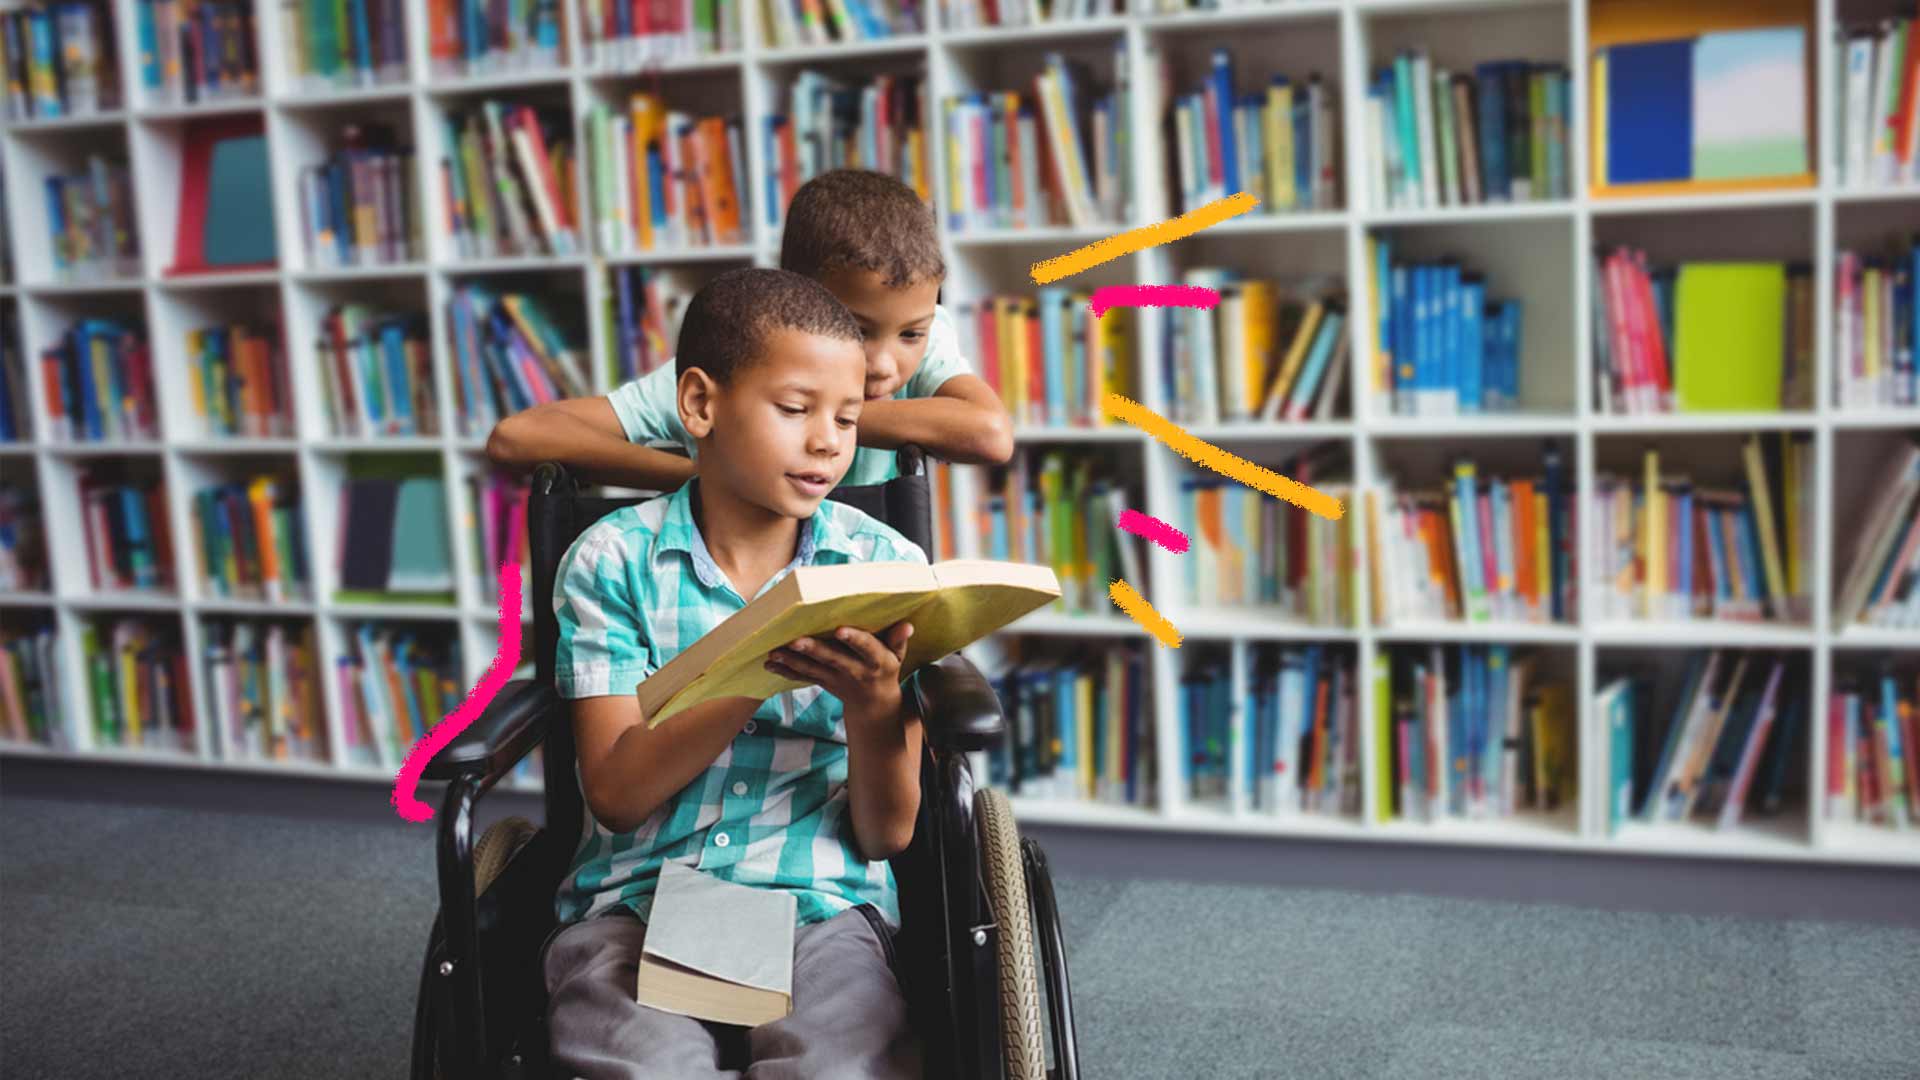 Foto de um menino na cadeira de rodas com um livro em mãos e com ele, outro menino apoiado na cadeira de rodas, ambos estão em uma biblioteca.